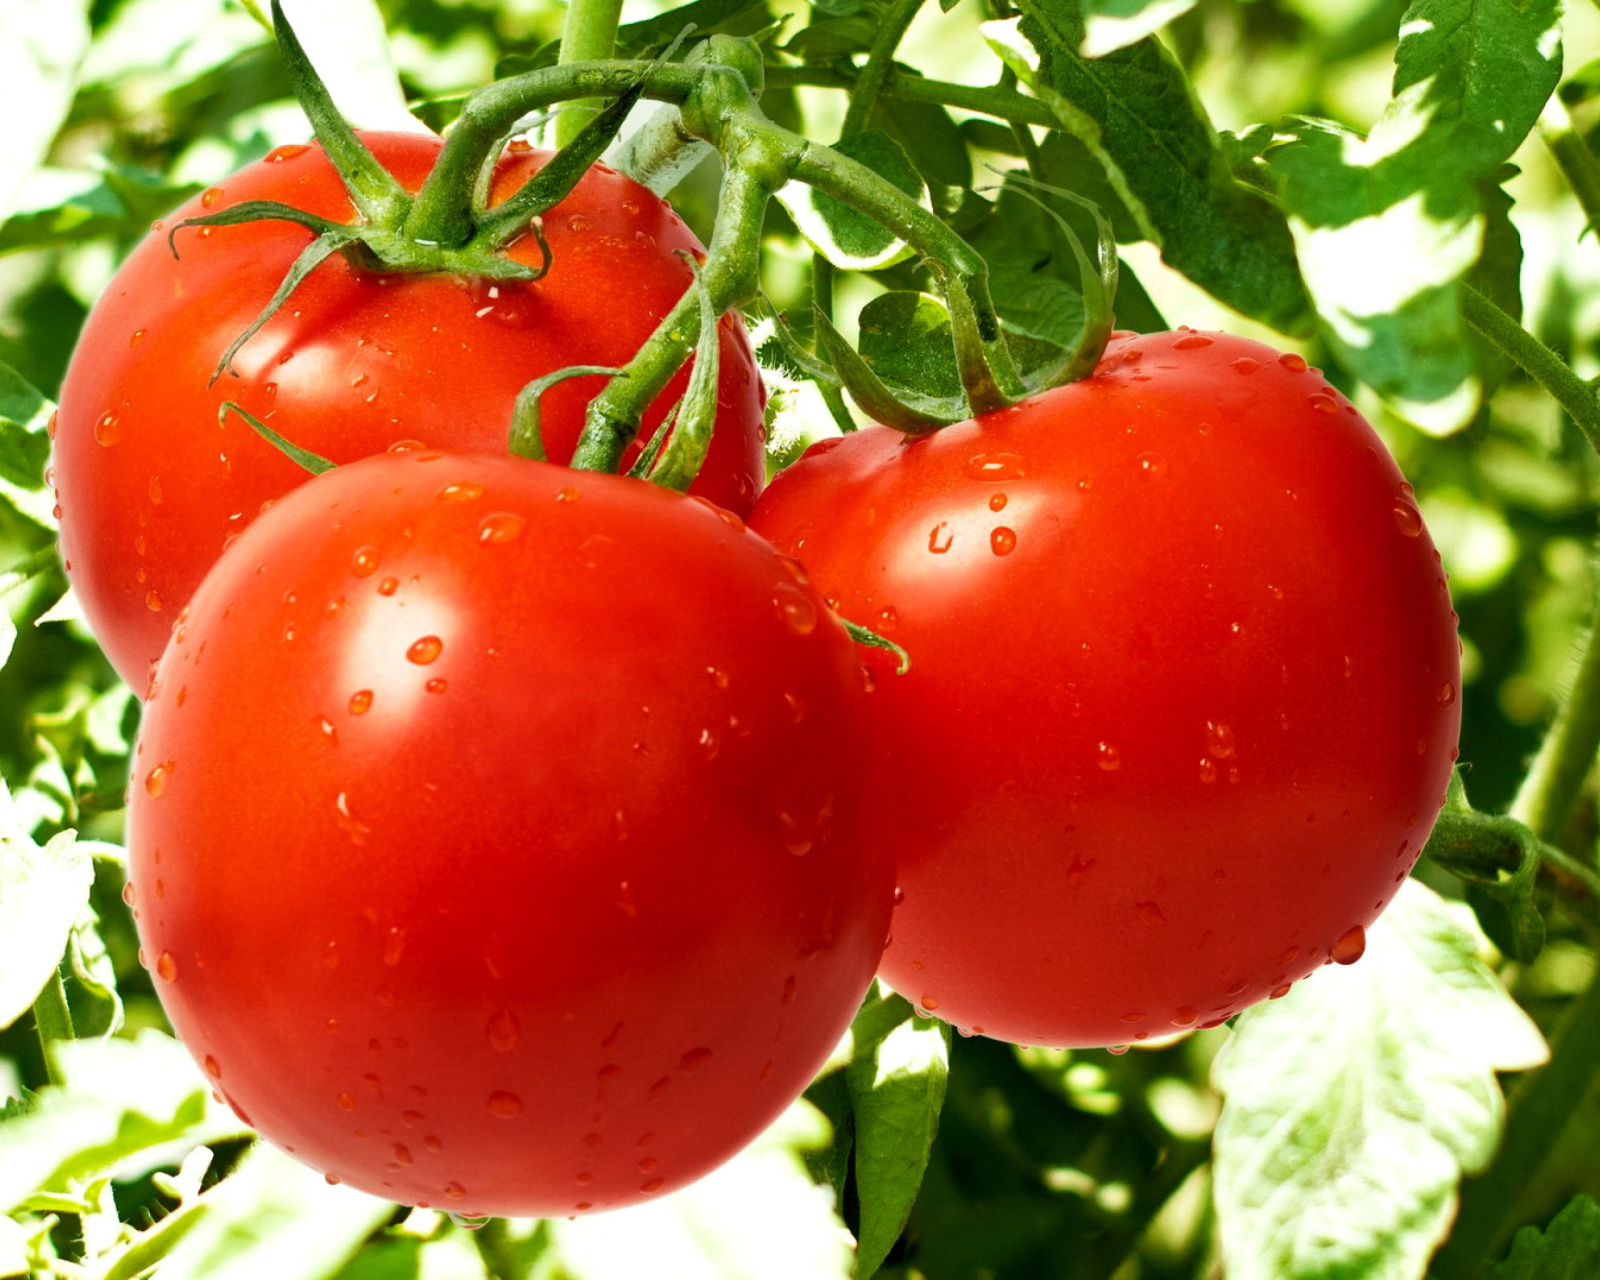 Sfondi Tomatoes on Bush 1600x1280